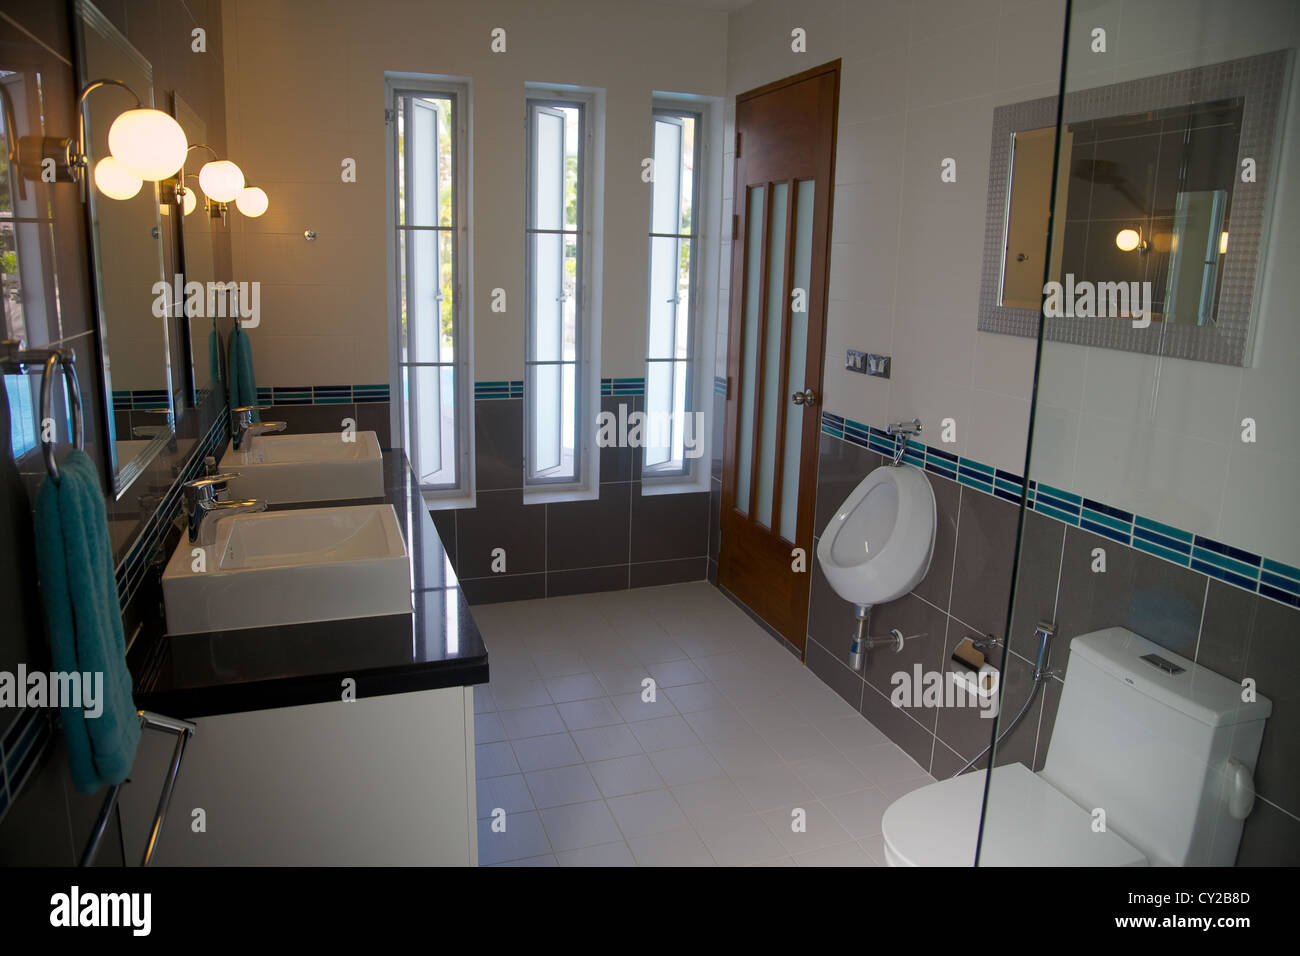 Une salle de bains moderne dans une maison en Thailande Banque D'Images